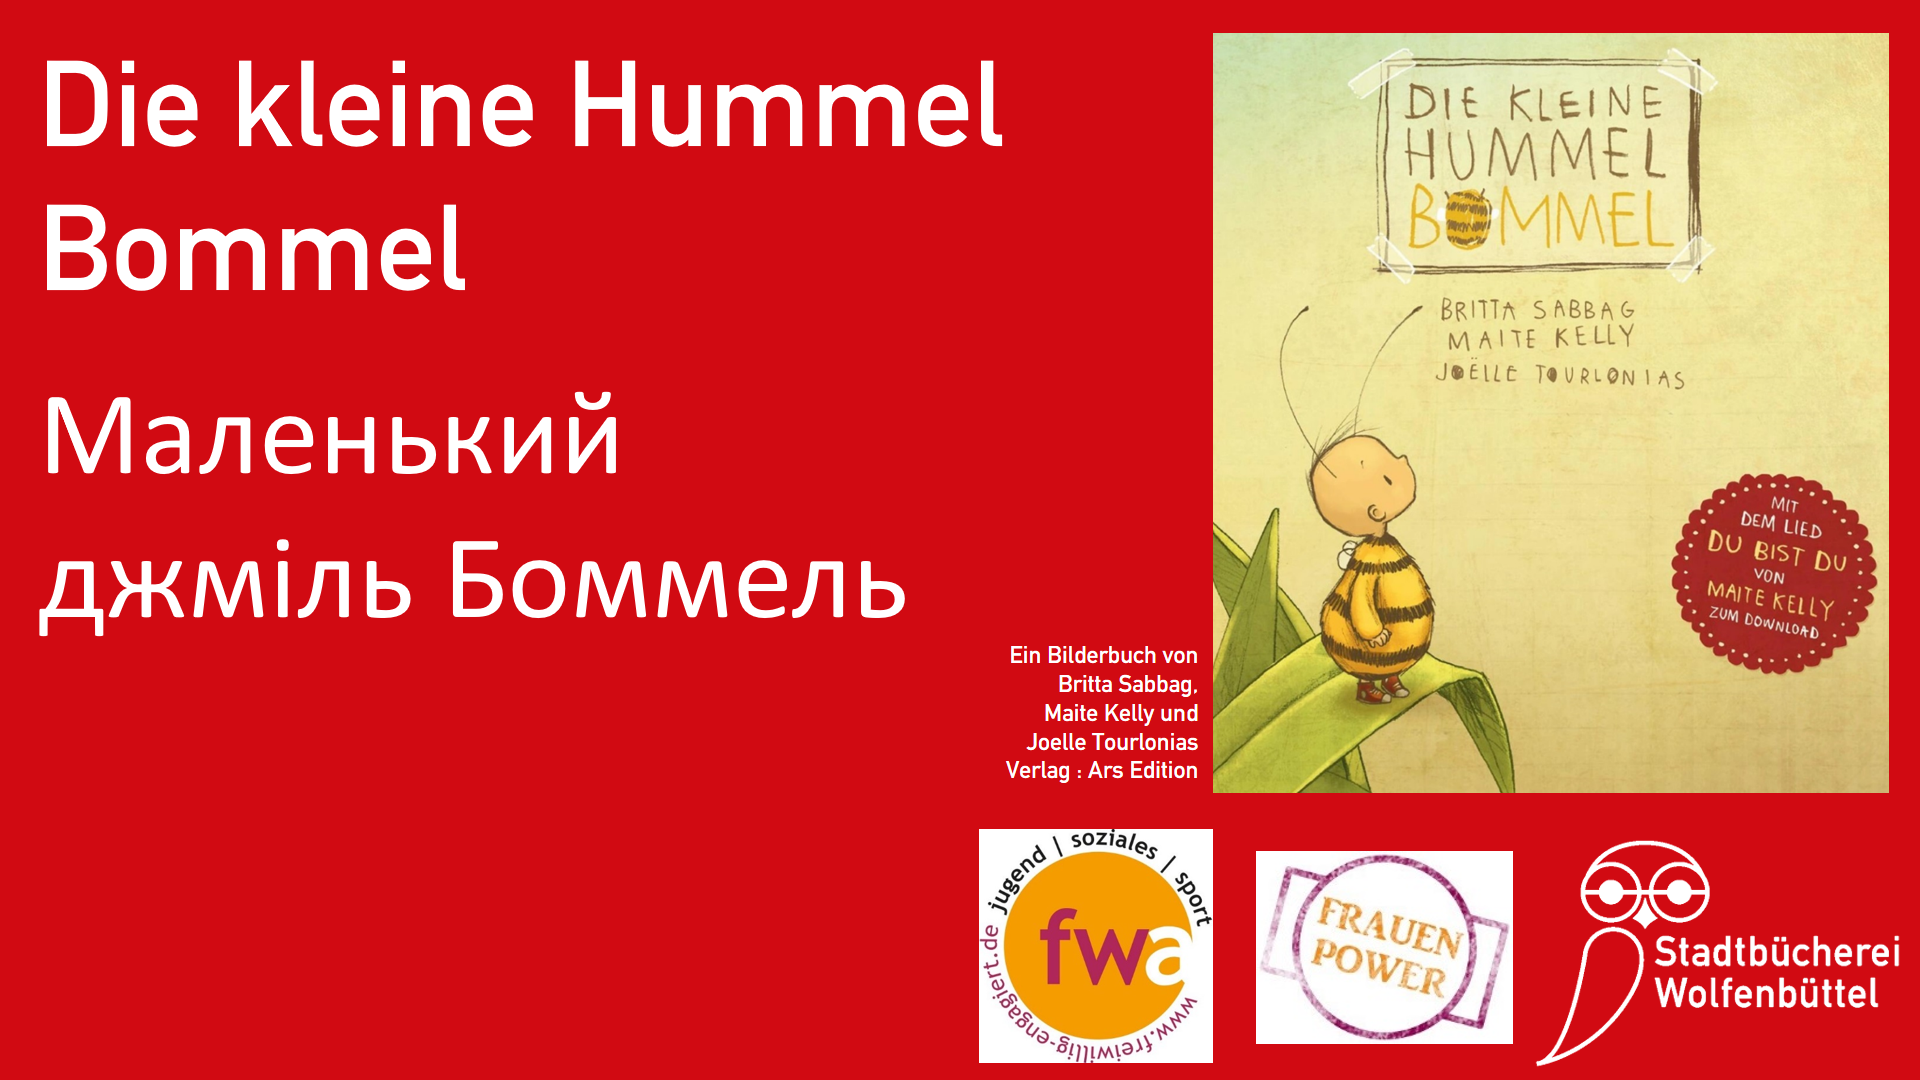 Das Titelbild des Bilderbuches und der Titel auf ukrainisch und deutsch vor rotem Hintergrund.